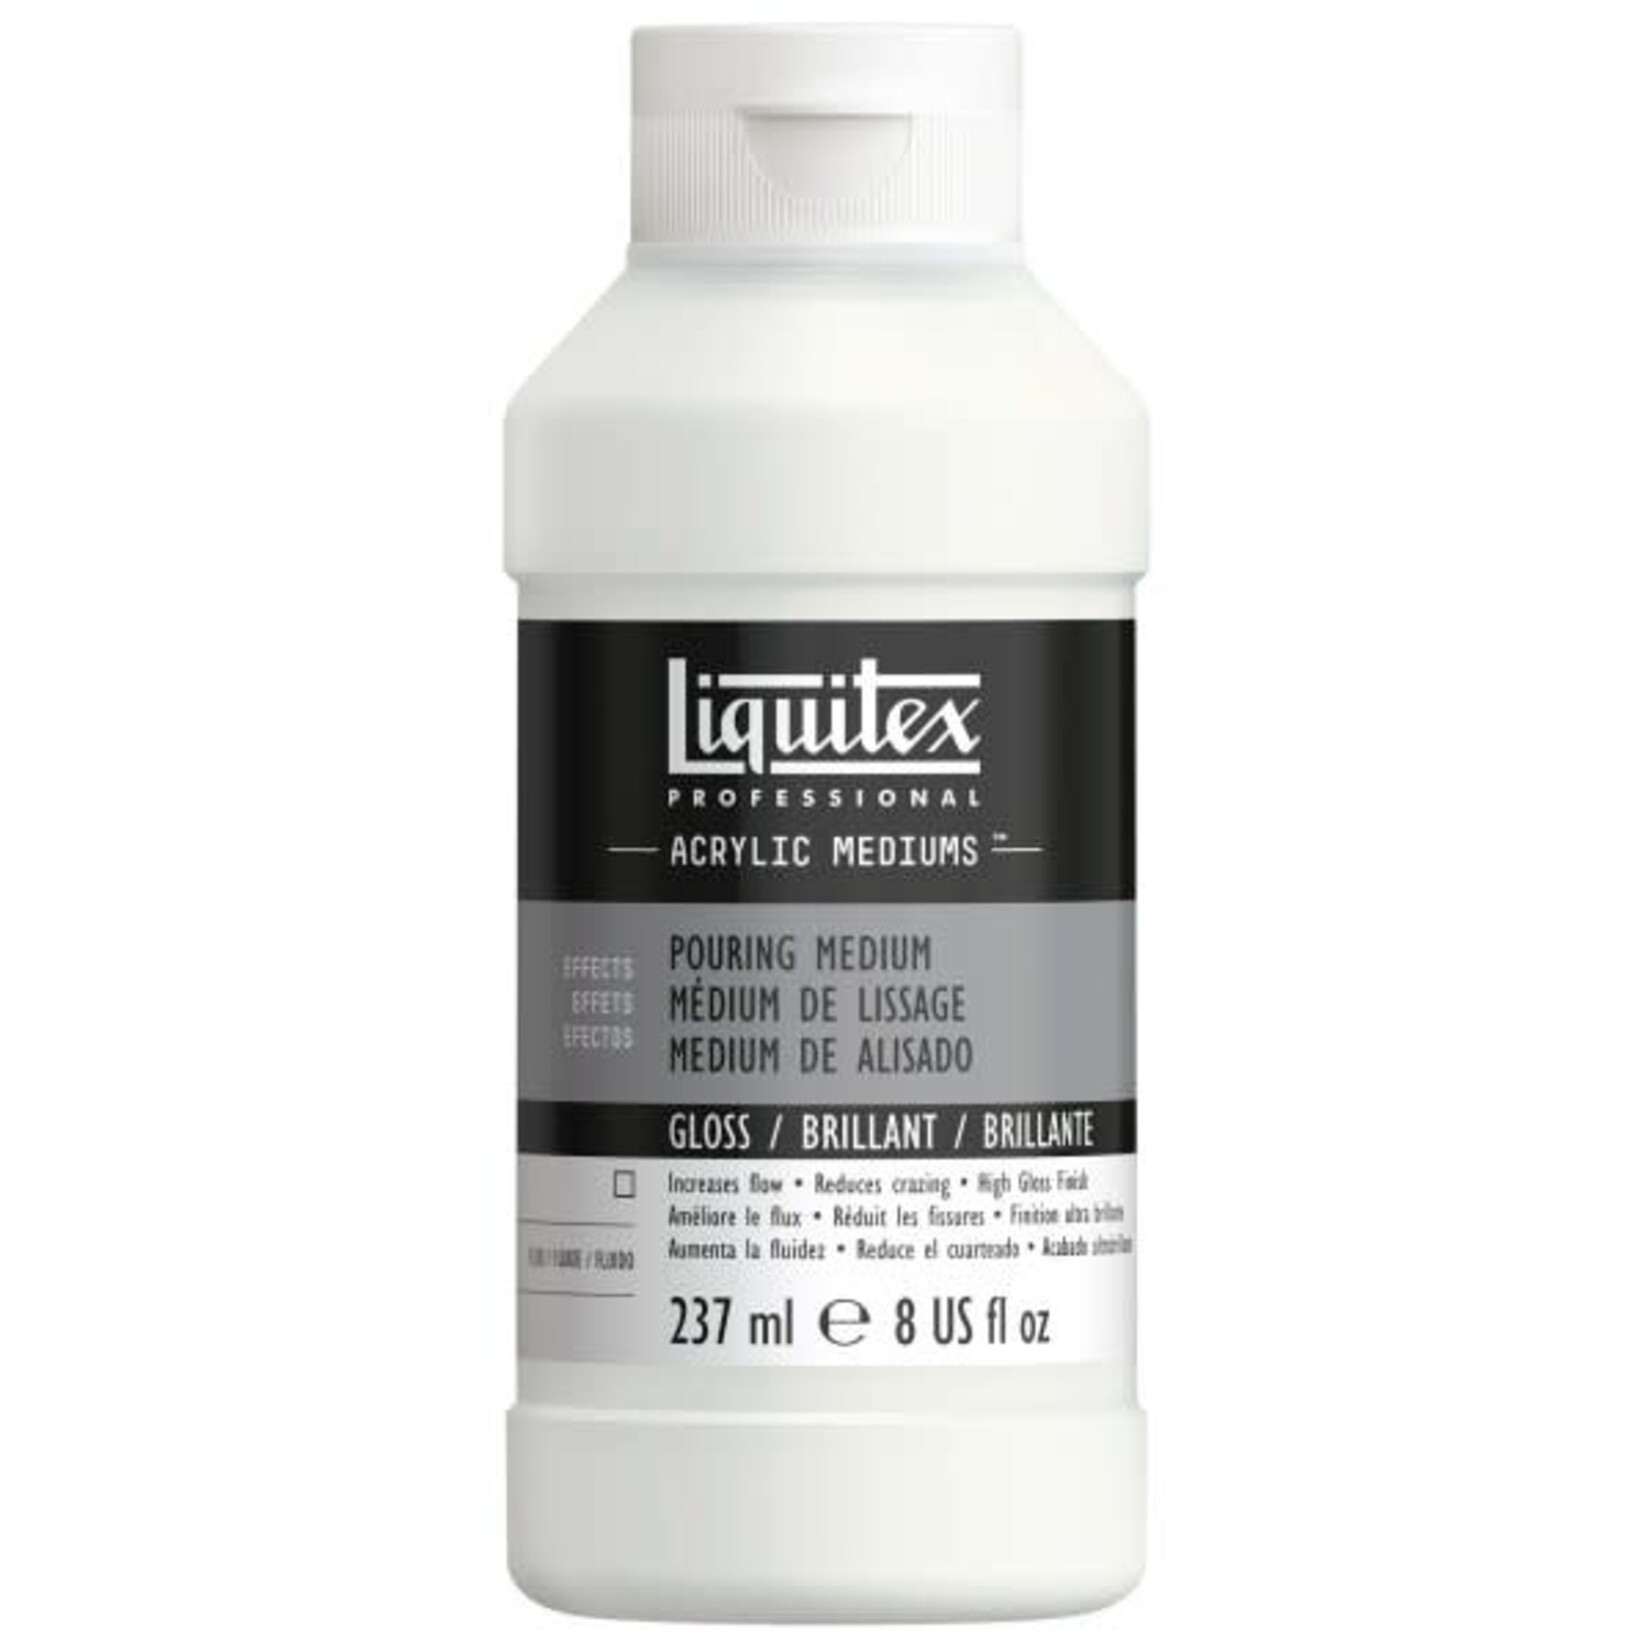 Liquitex Pouring Medium 8 Oz